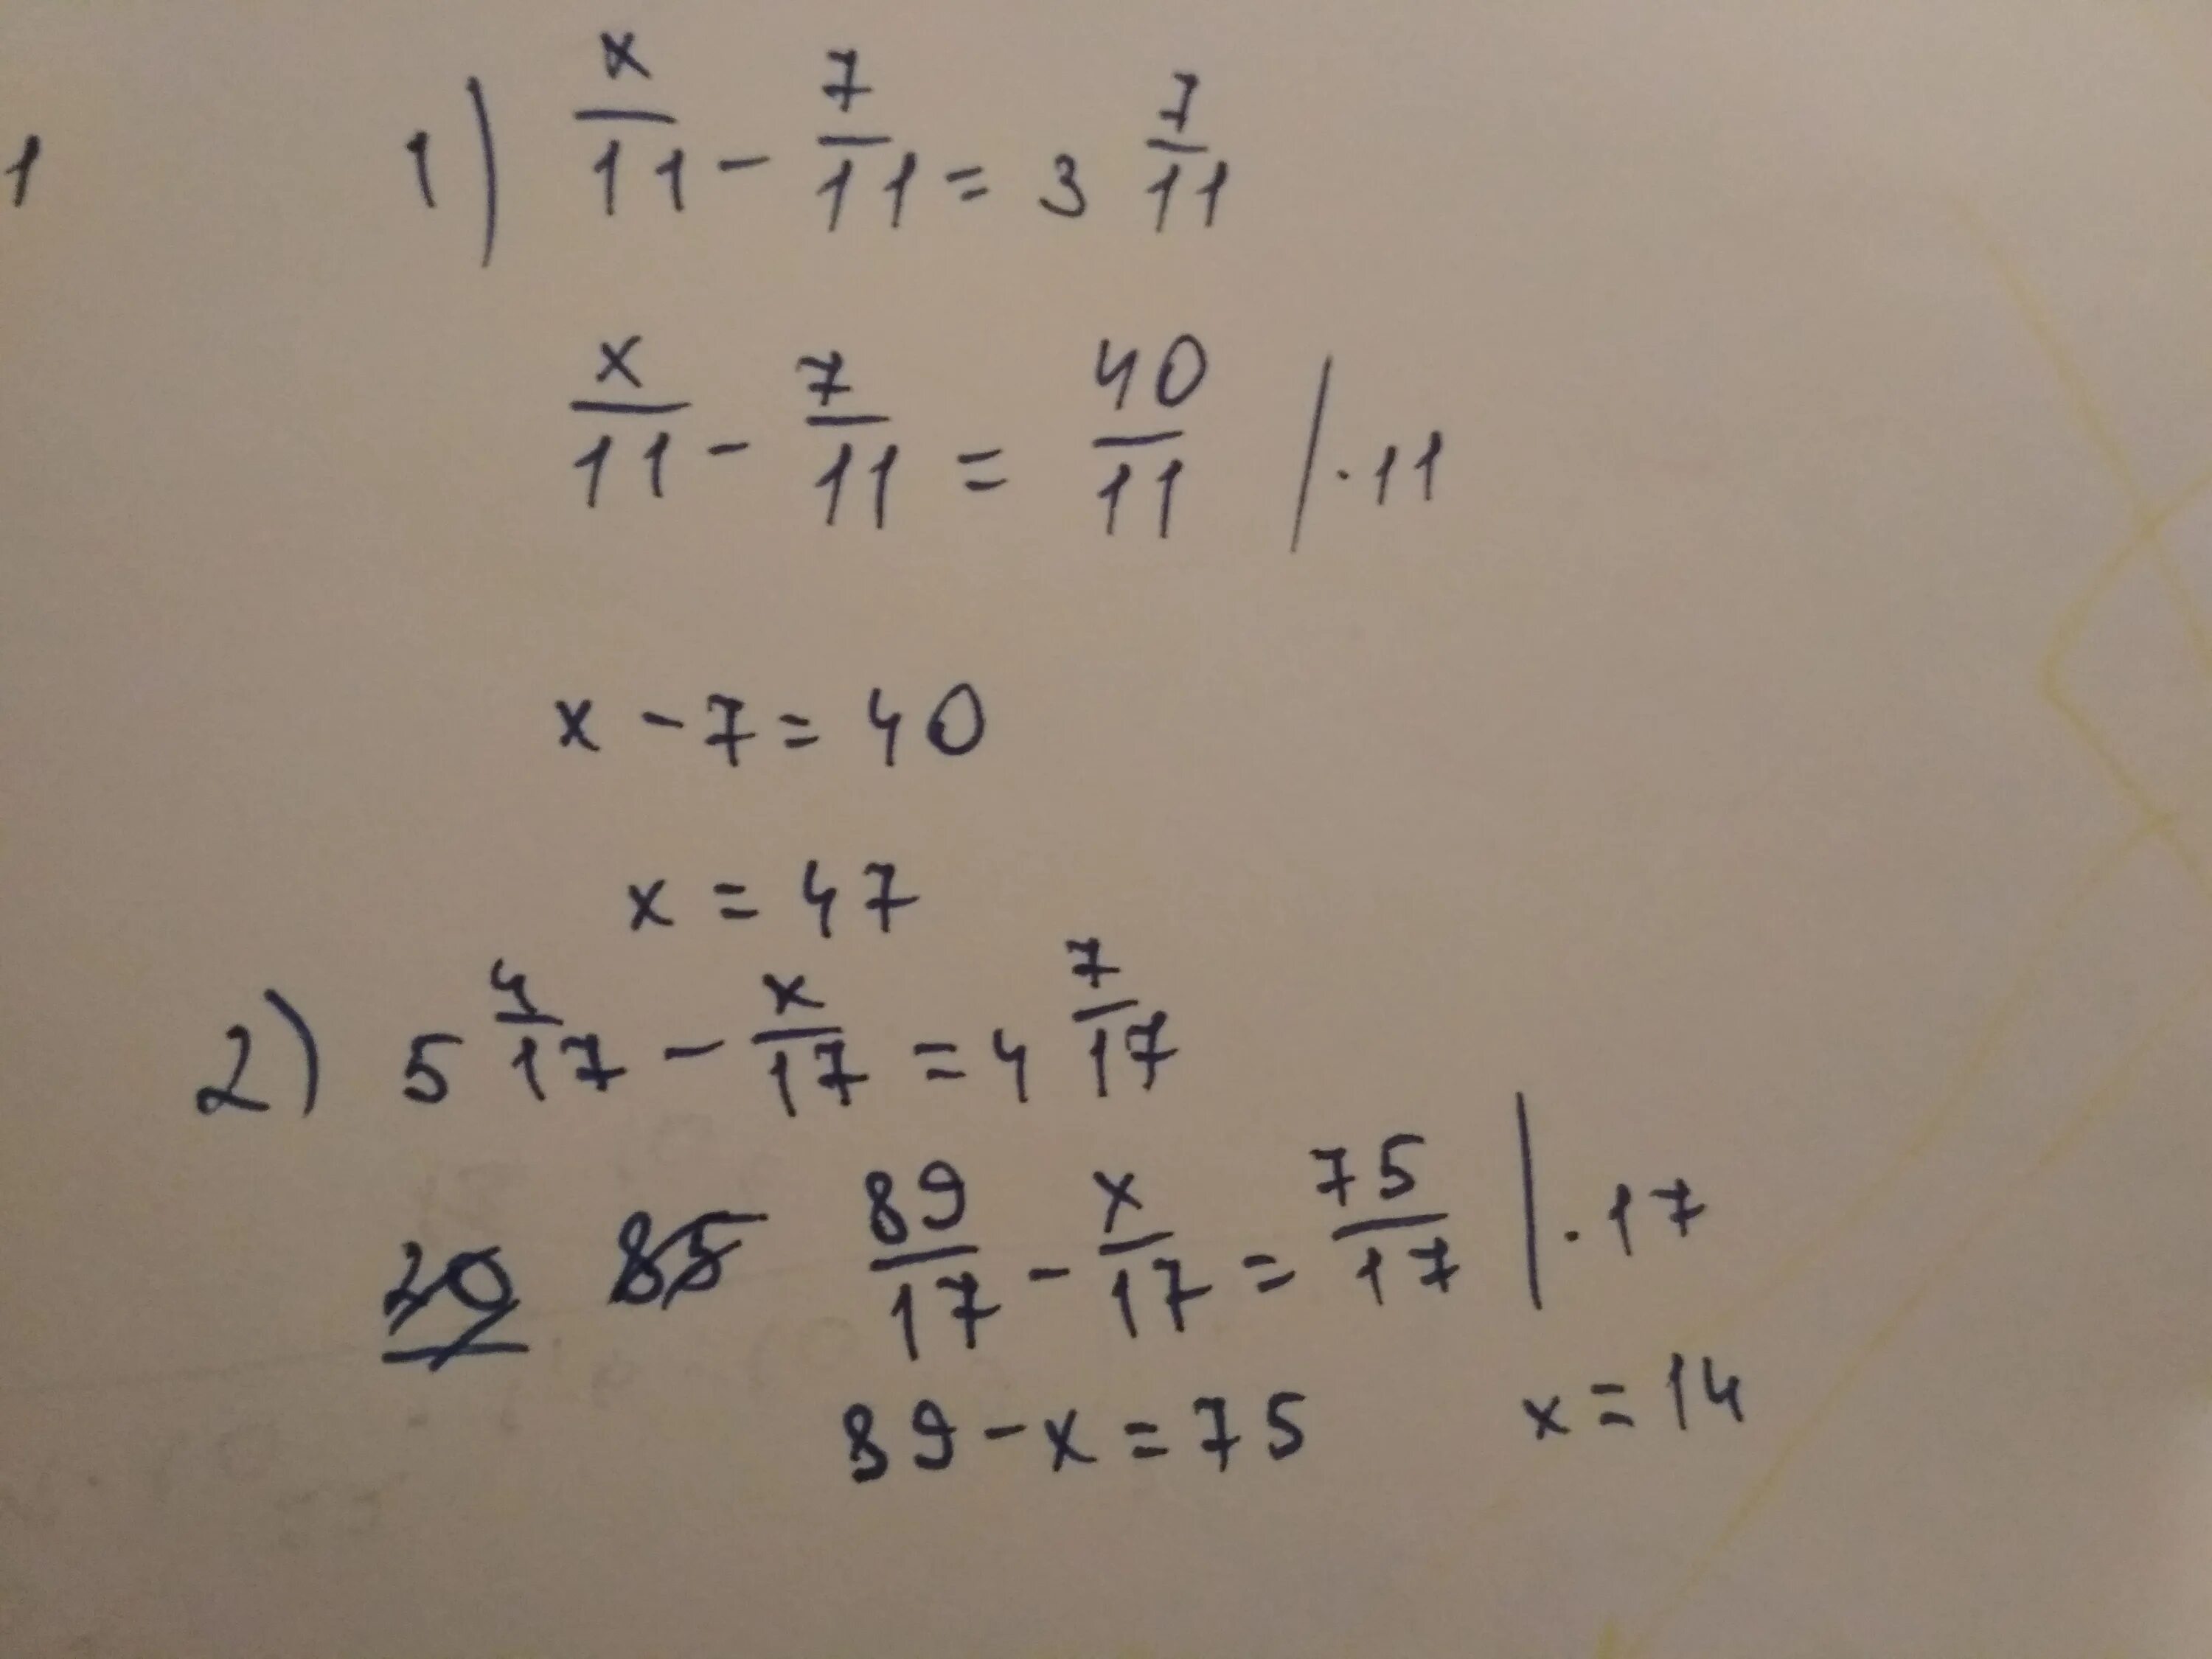 5х 11 7 при х 7. 11/Х+4 -11/7. Х-У=7 Х+У=11. Реши уравнение 5:( 2 целых 1/2+x)= 5целых 3/4. -7/11х=1 3/11.